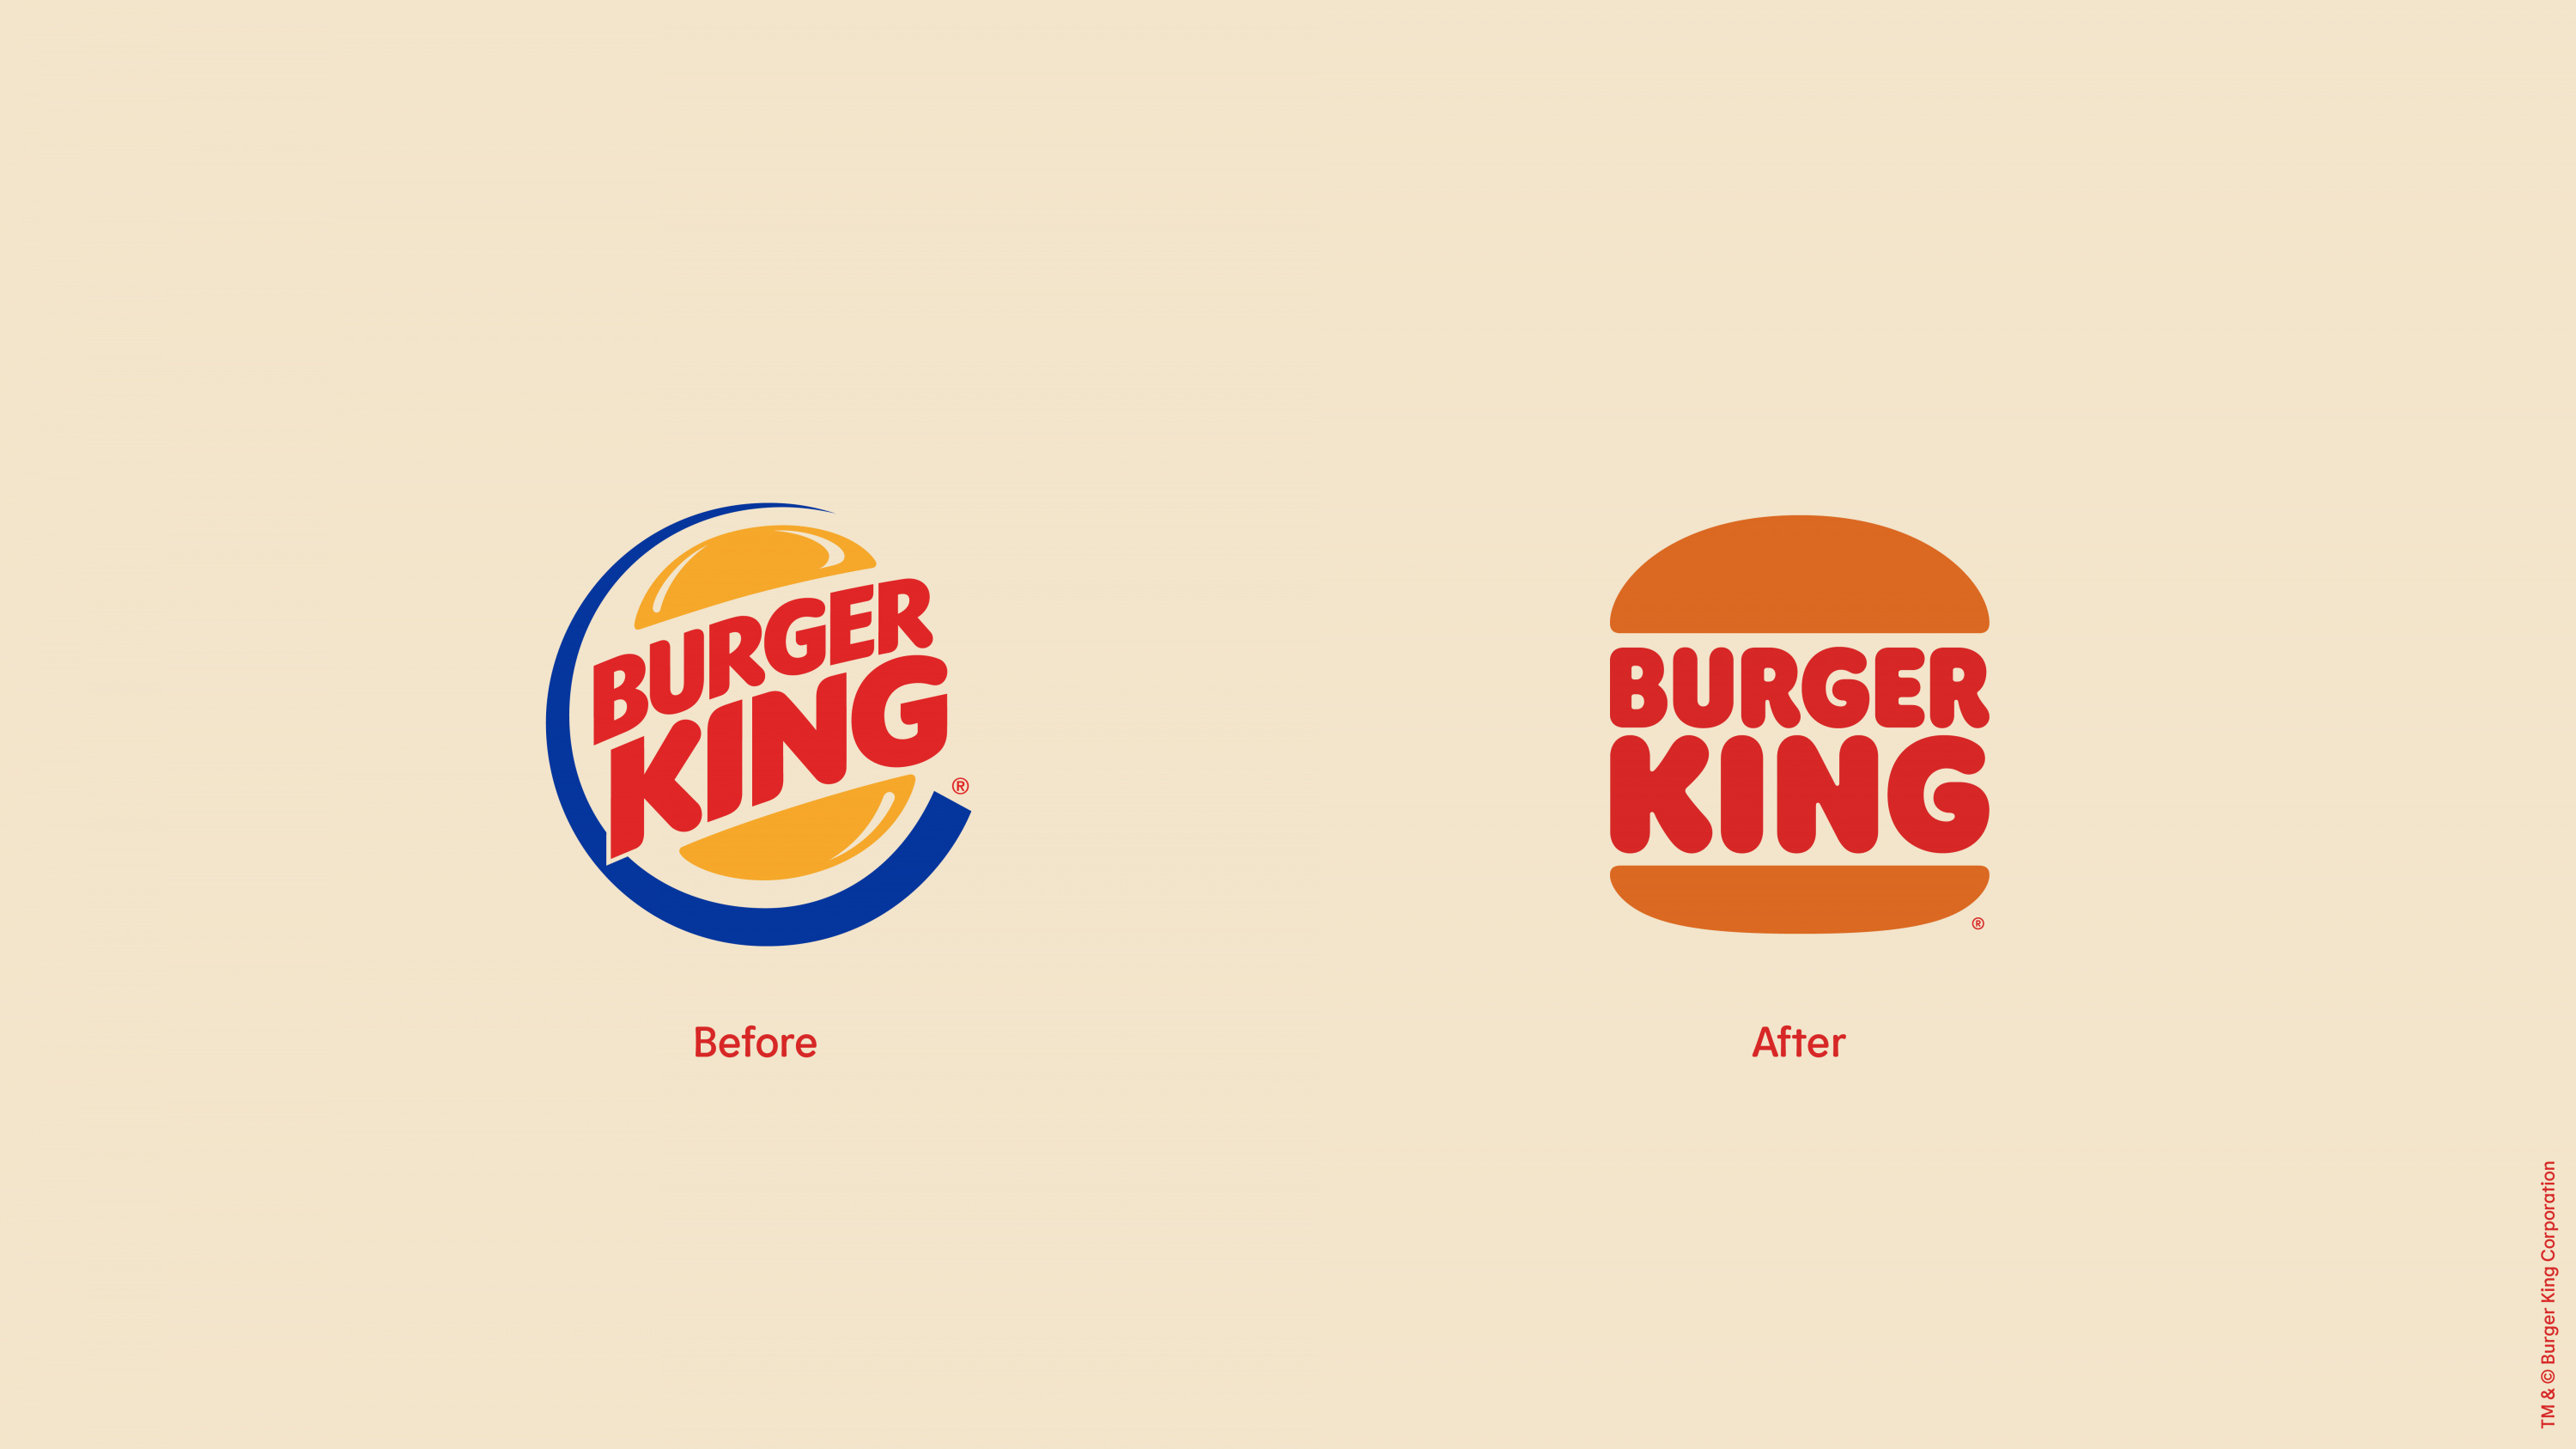 Источник: Burger King